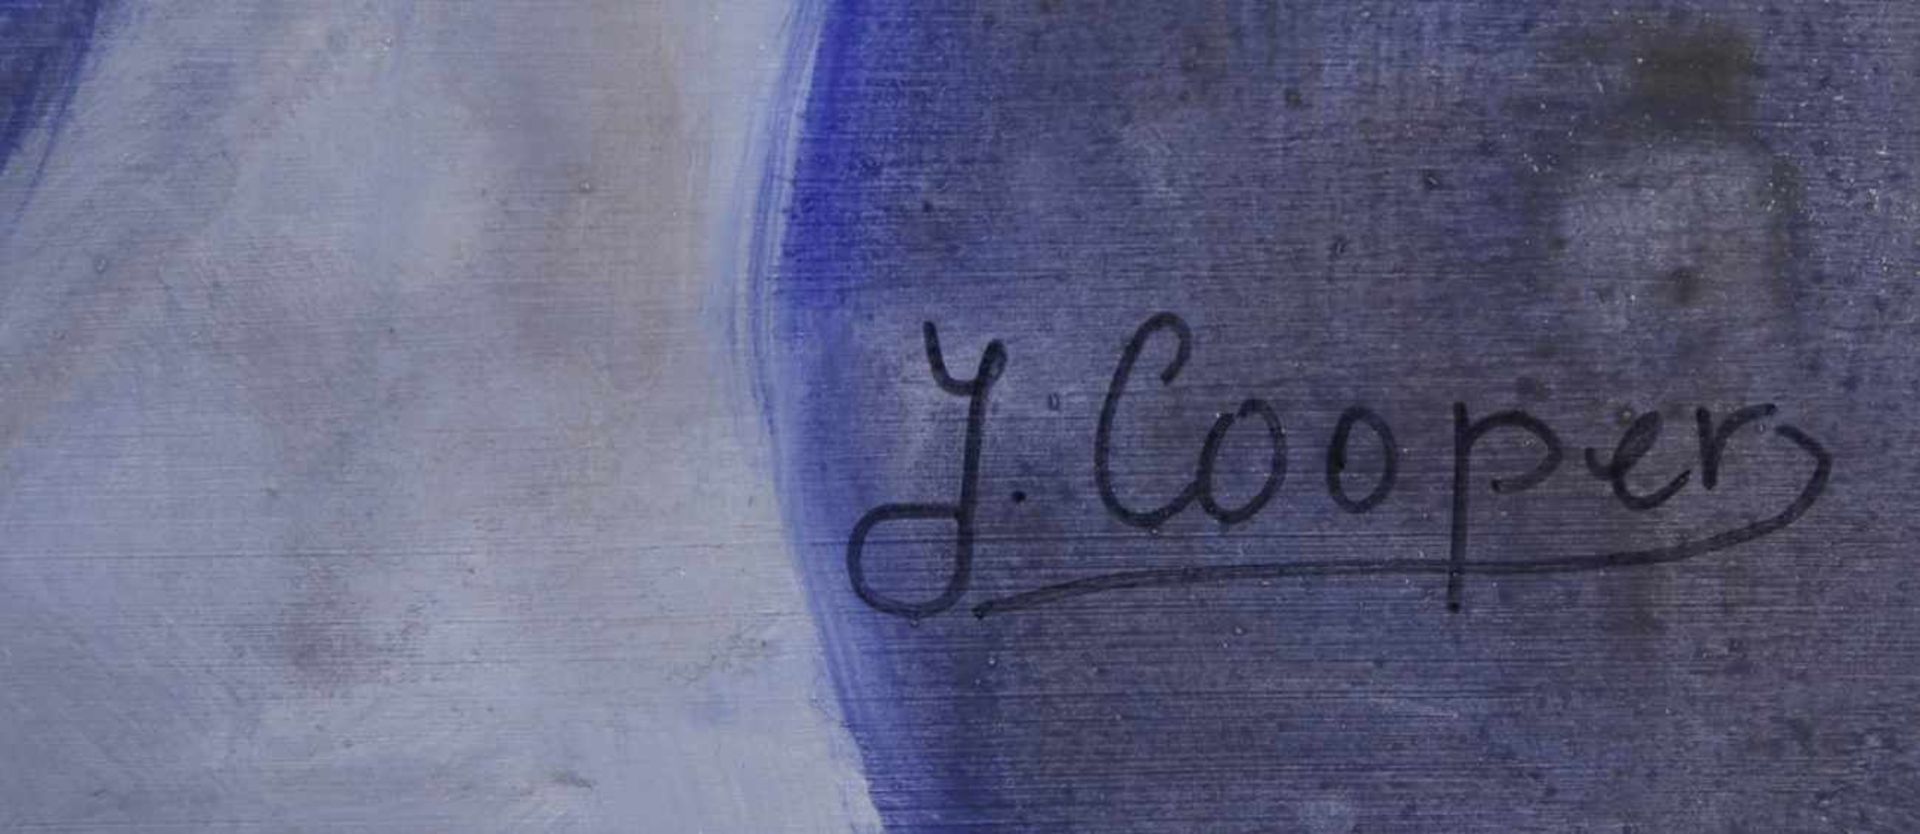 Cooper, J., zeitgenössischer Maler. "Sitzender, weiblicher Akt in Blau", sign., Öl/Lw., 80x 60 - Bild 2 aus 2